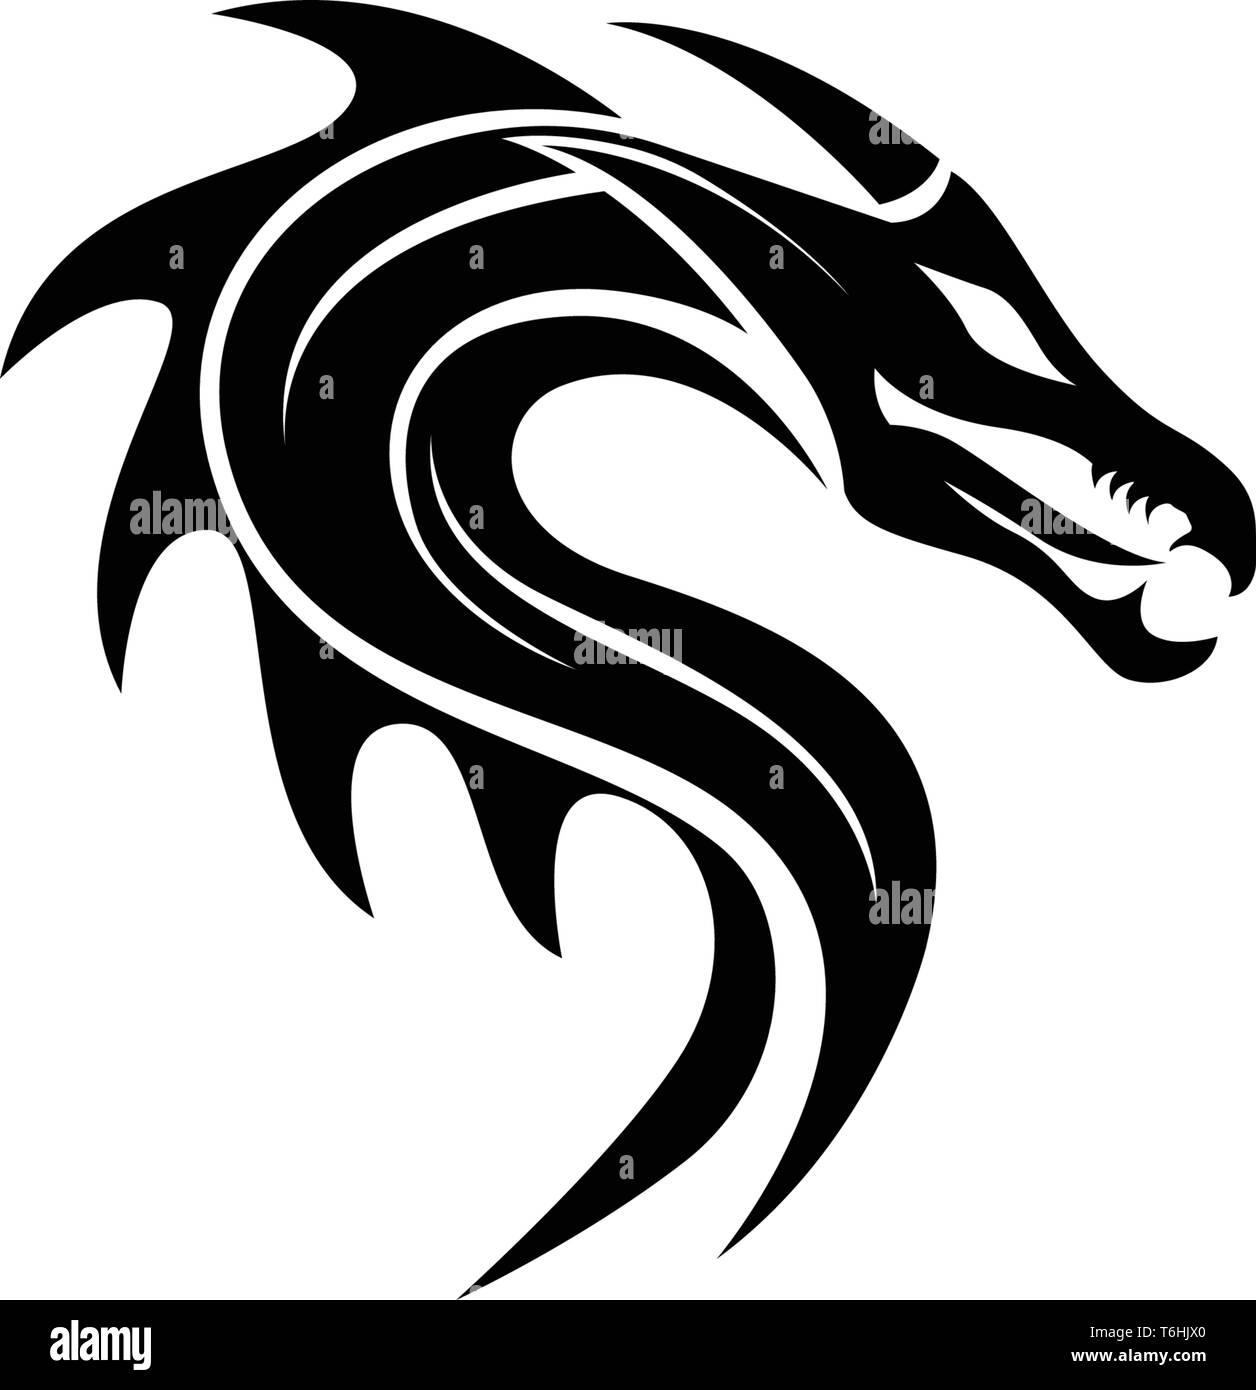 Plantilla de logo de dragón